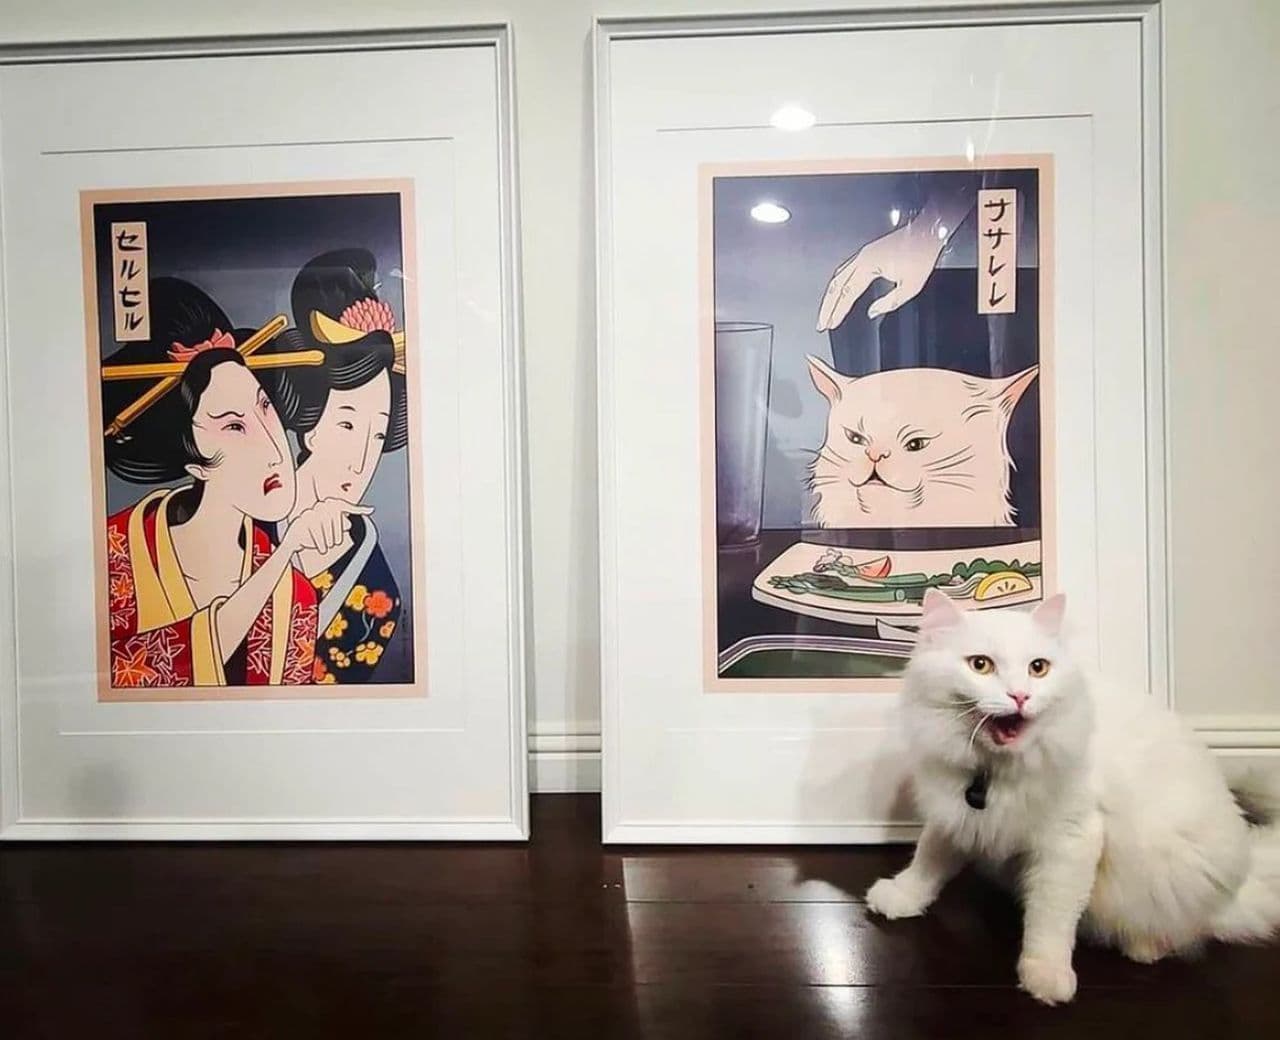 浮世絵ミーム！ ネコと女性が女性がネコをしかりつける浮世絵スタイルの絵画販売中 ちょっと変わった壁飾り絵が欲しい人に